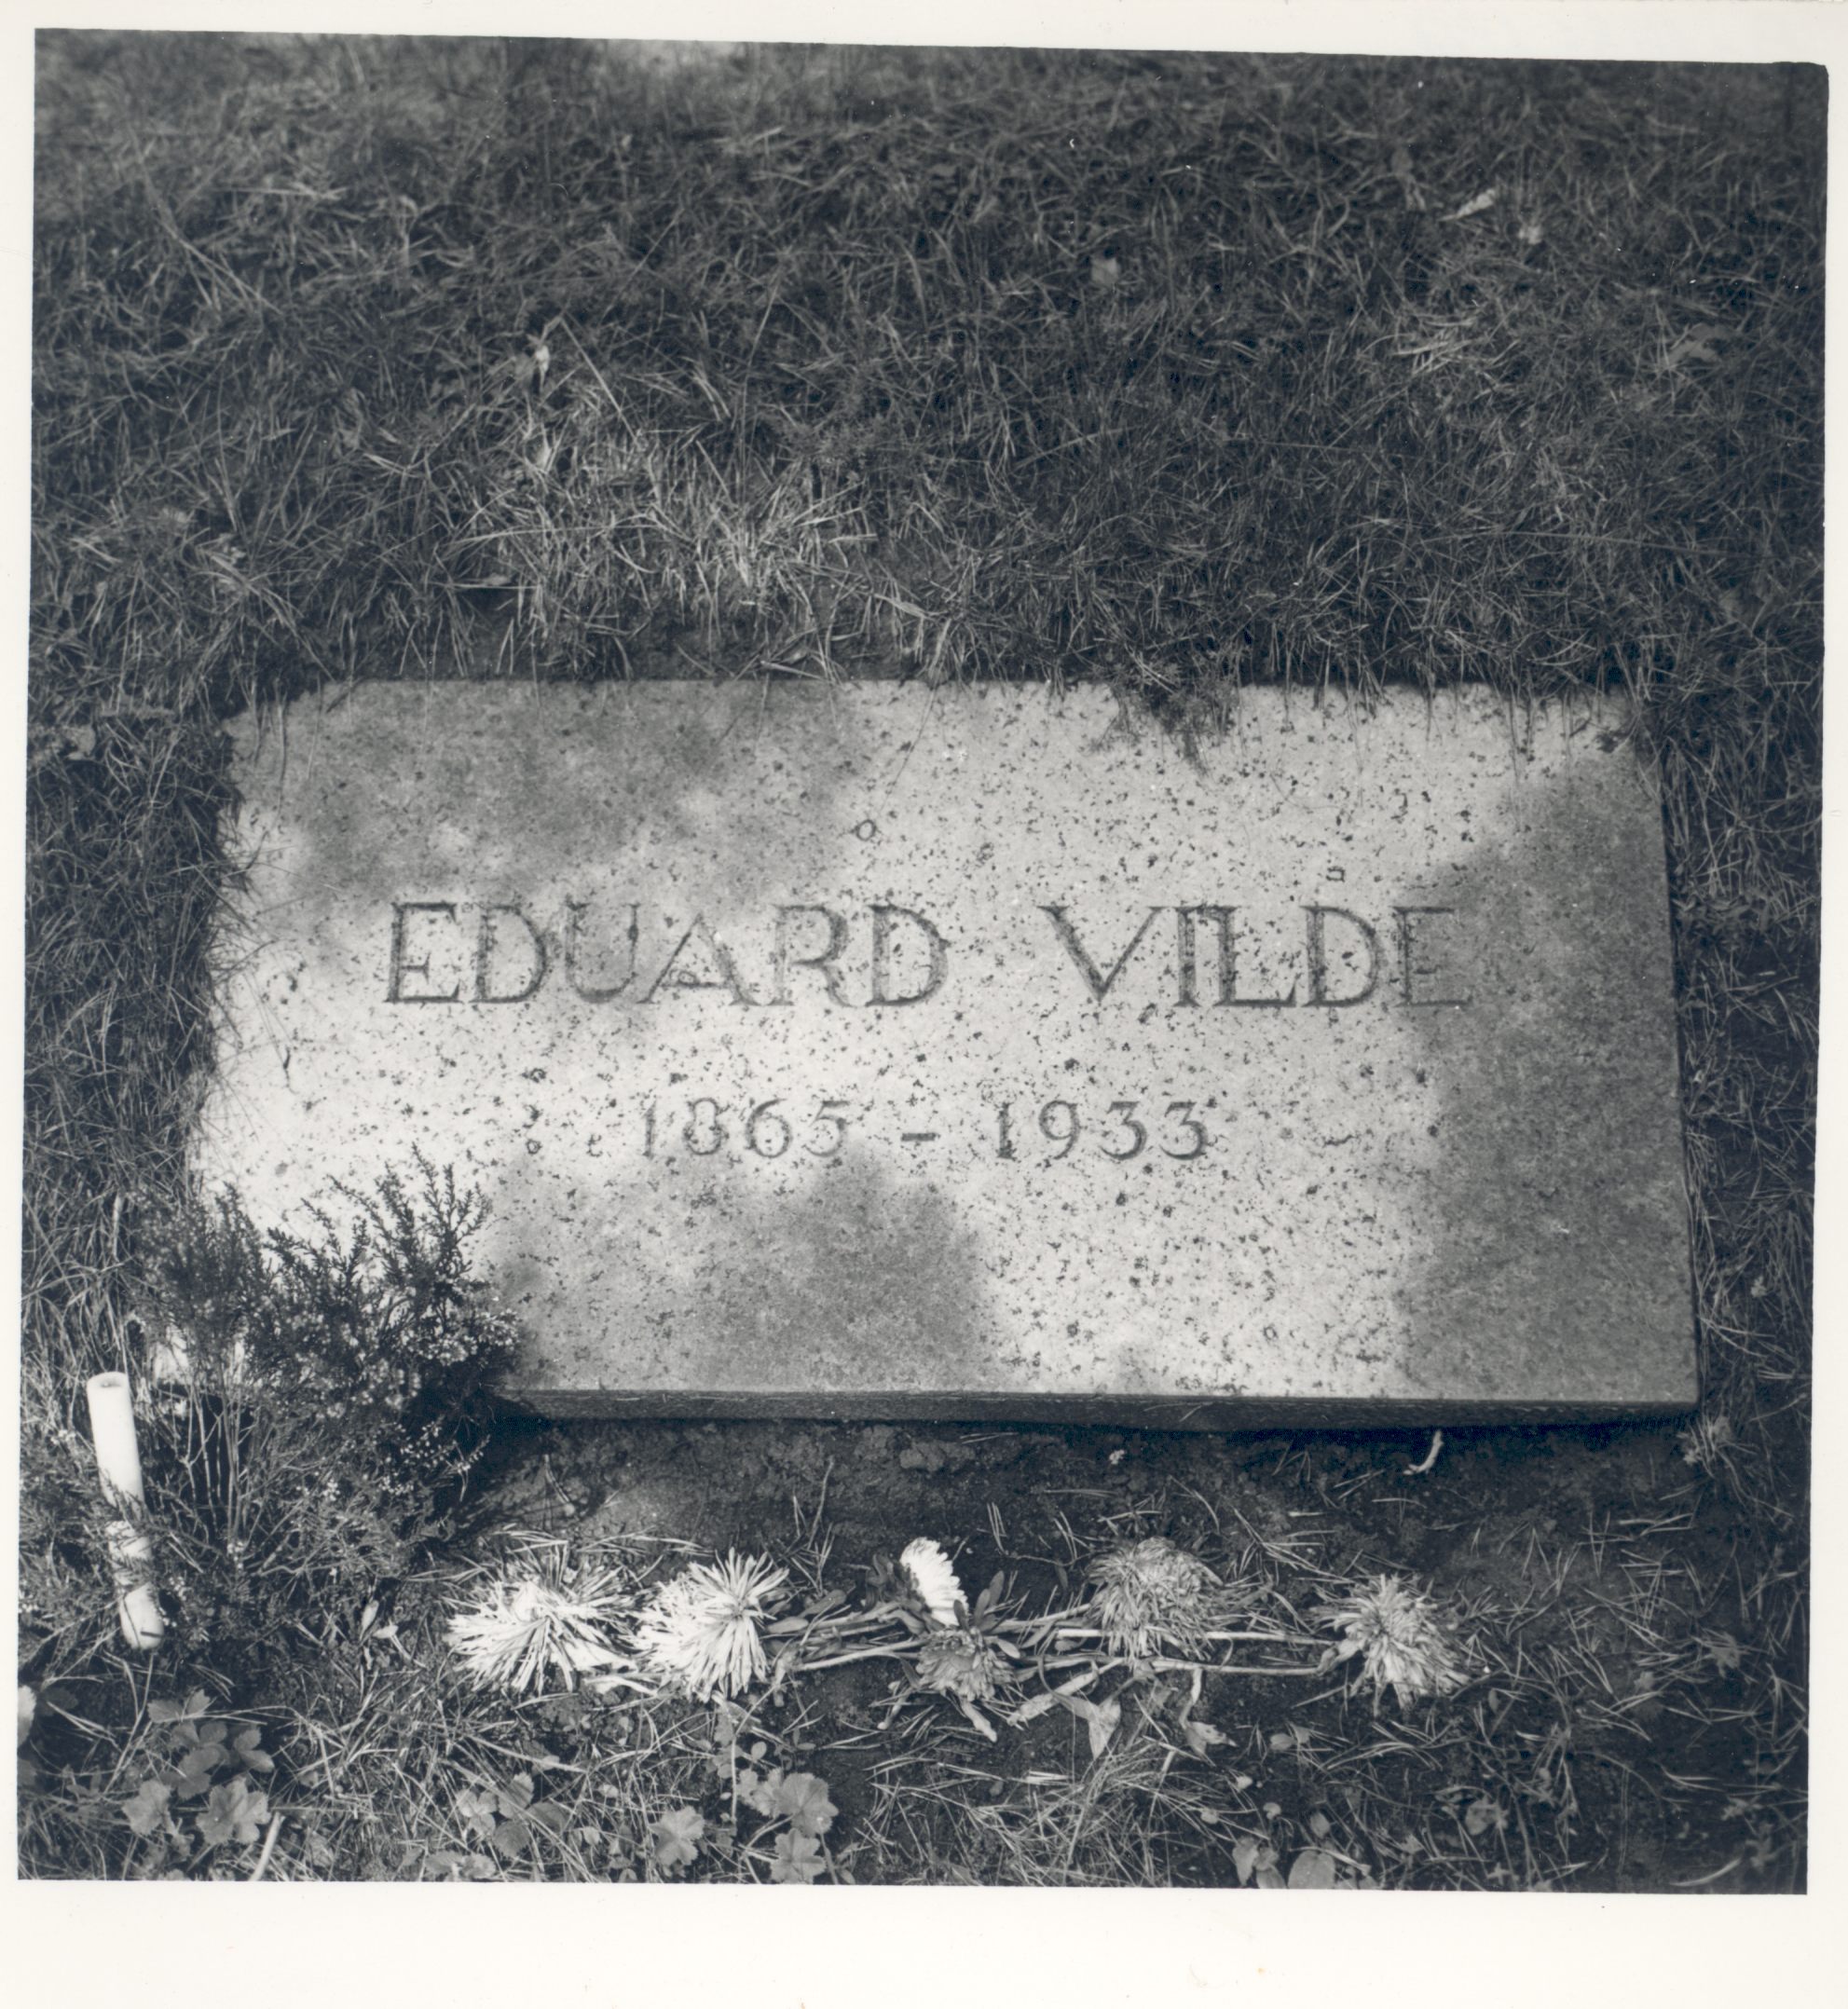 Vilde, Eduard, e. Vilde's grave at the Tallinn Forest Hall